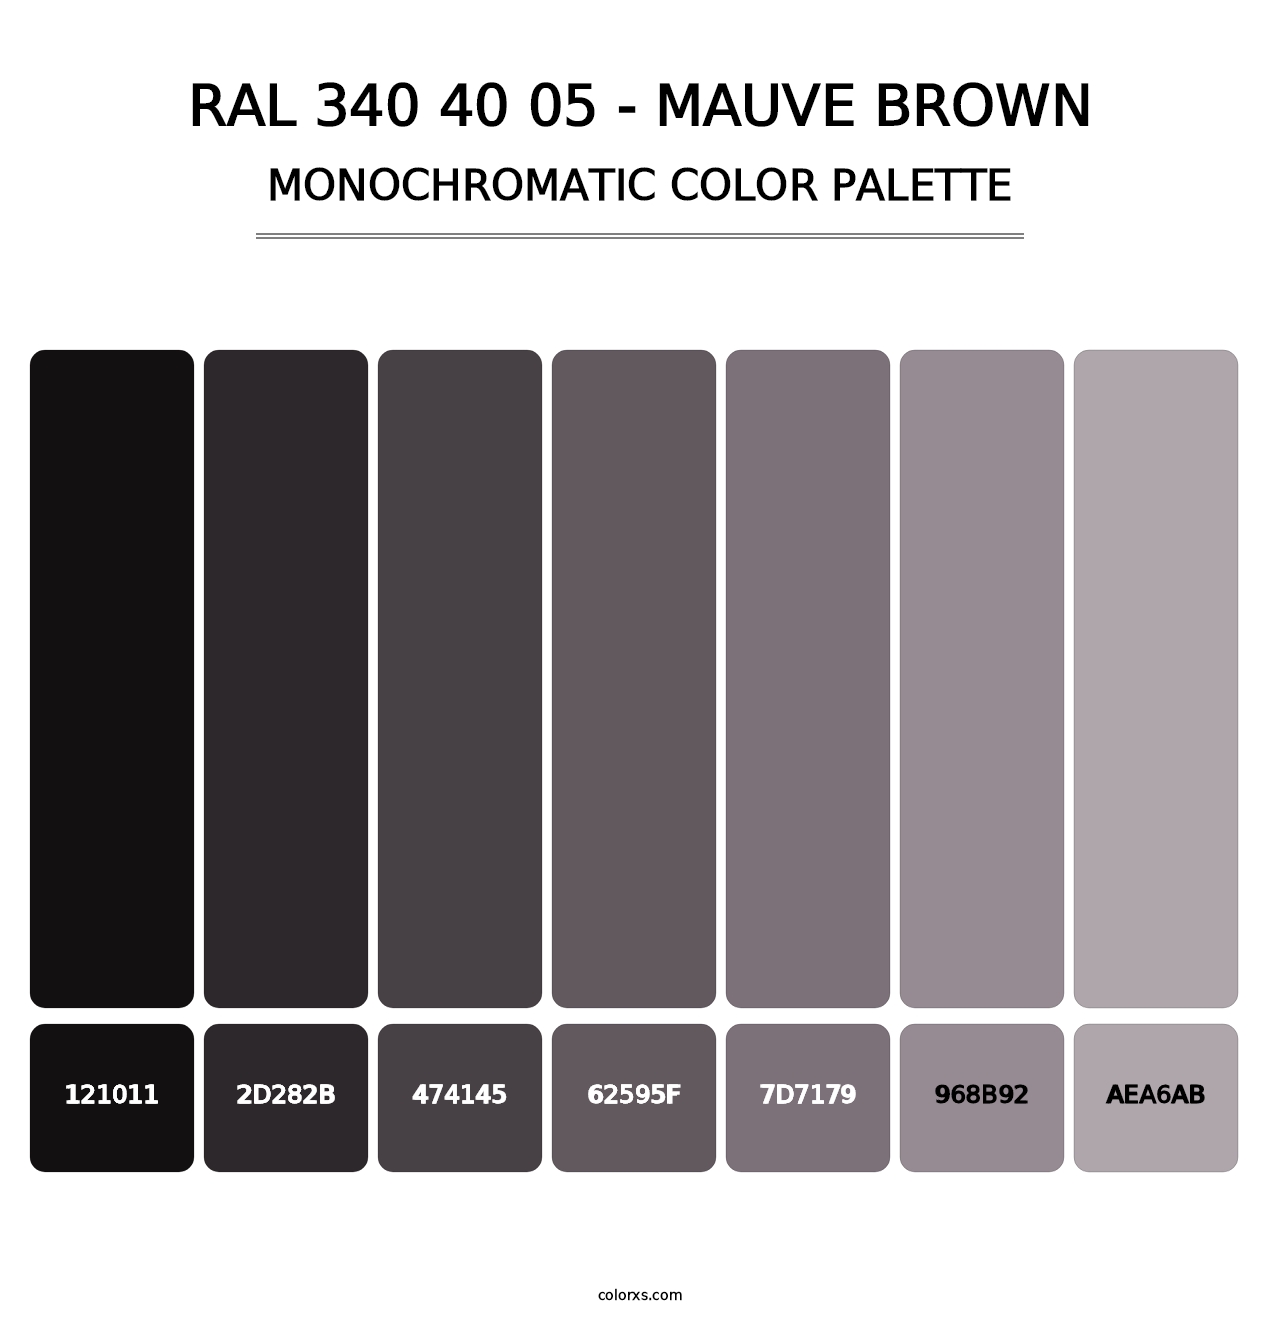 RAL 340 40 05 - Mauve Brown - Monochromatic Color Palette